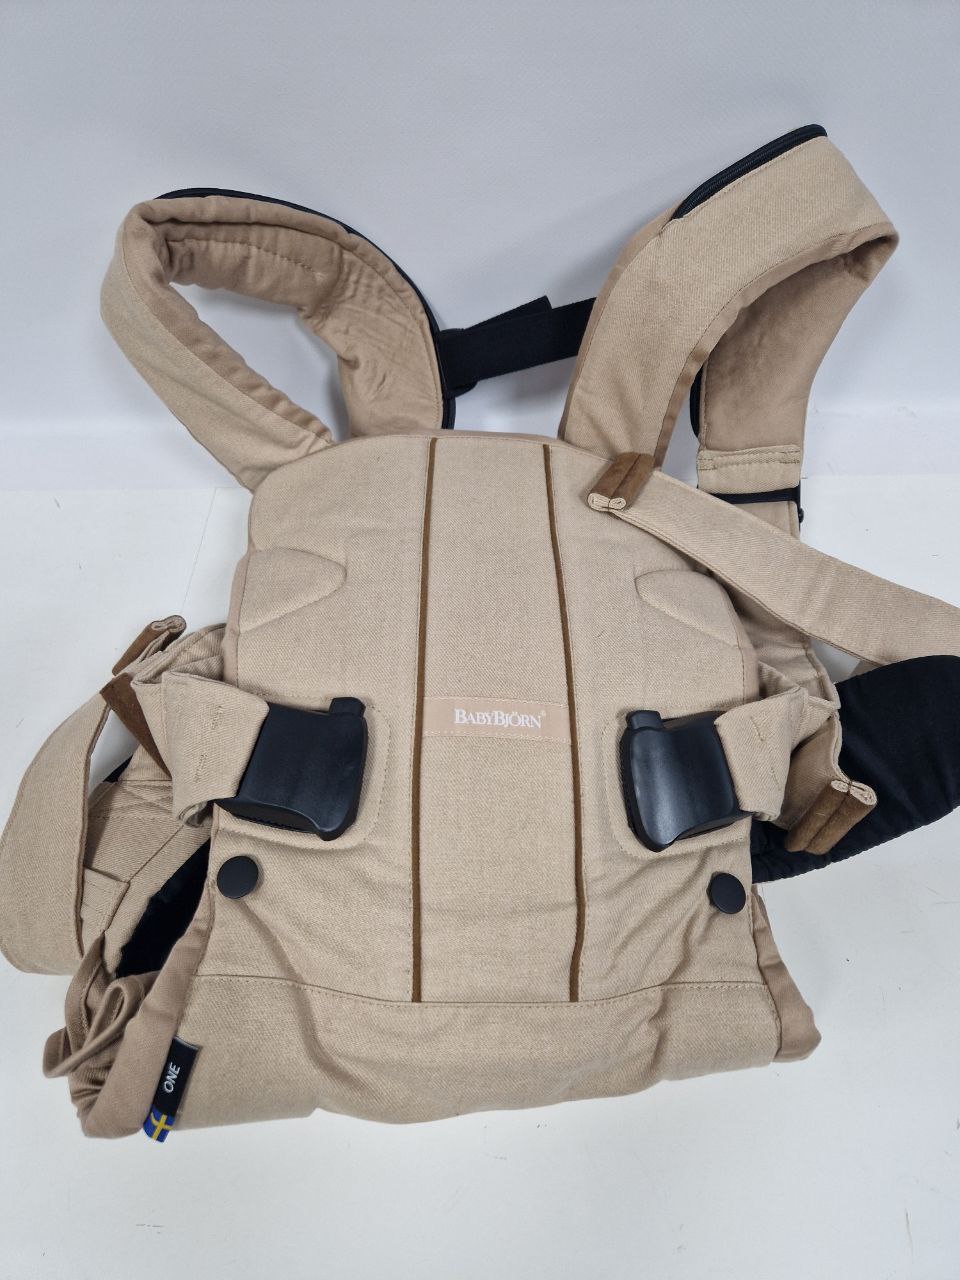 Продажа детского рюкзака-переноски Babybjorn One Cotton, цвет песочный, состояние: уценка. Тест-драйв и доставка по России.